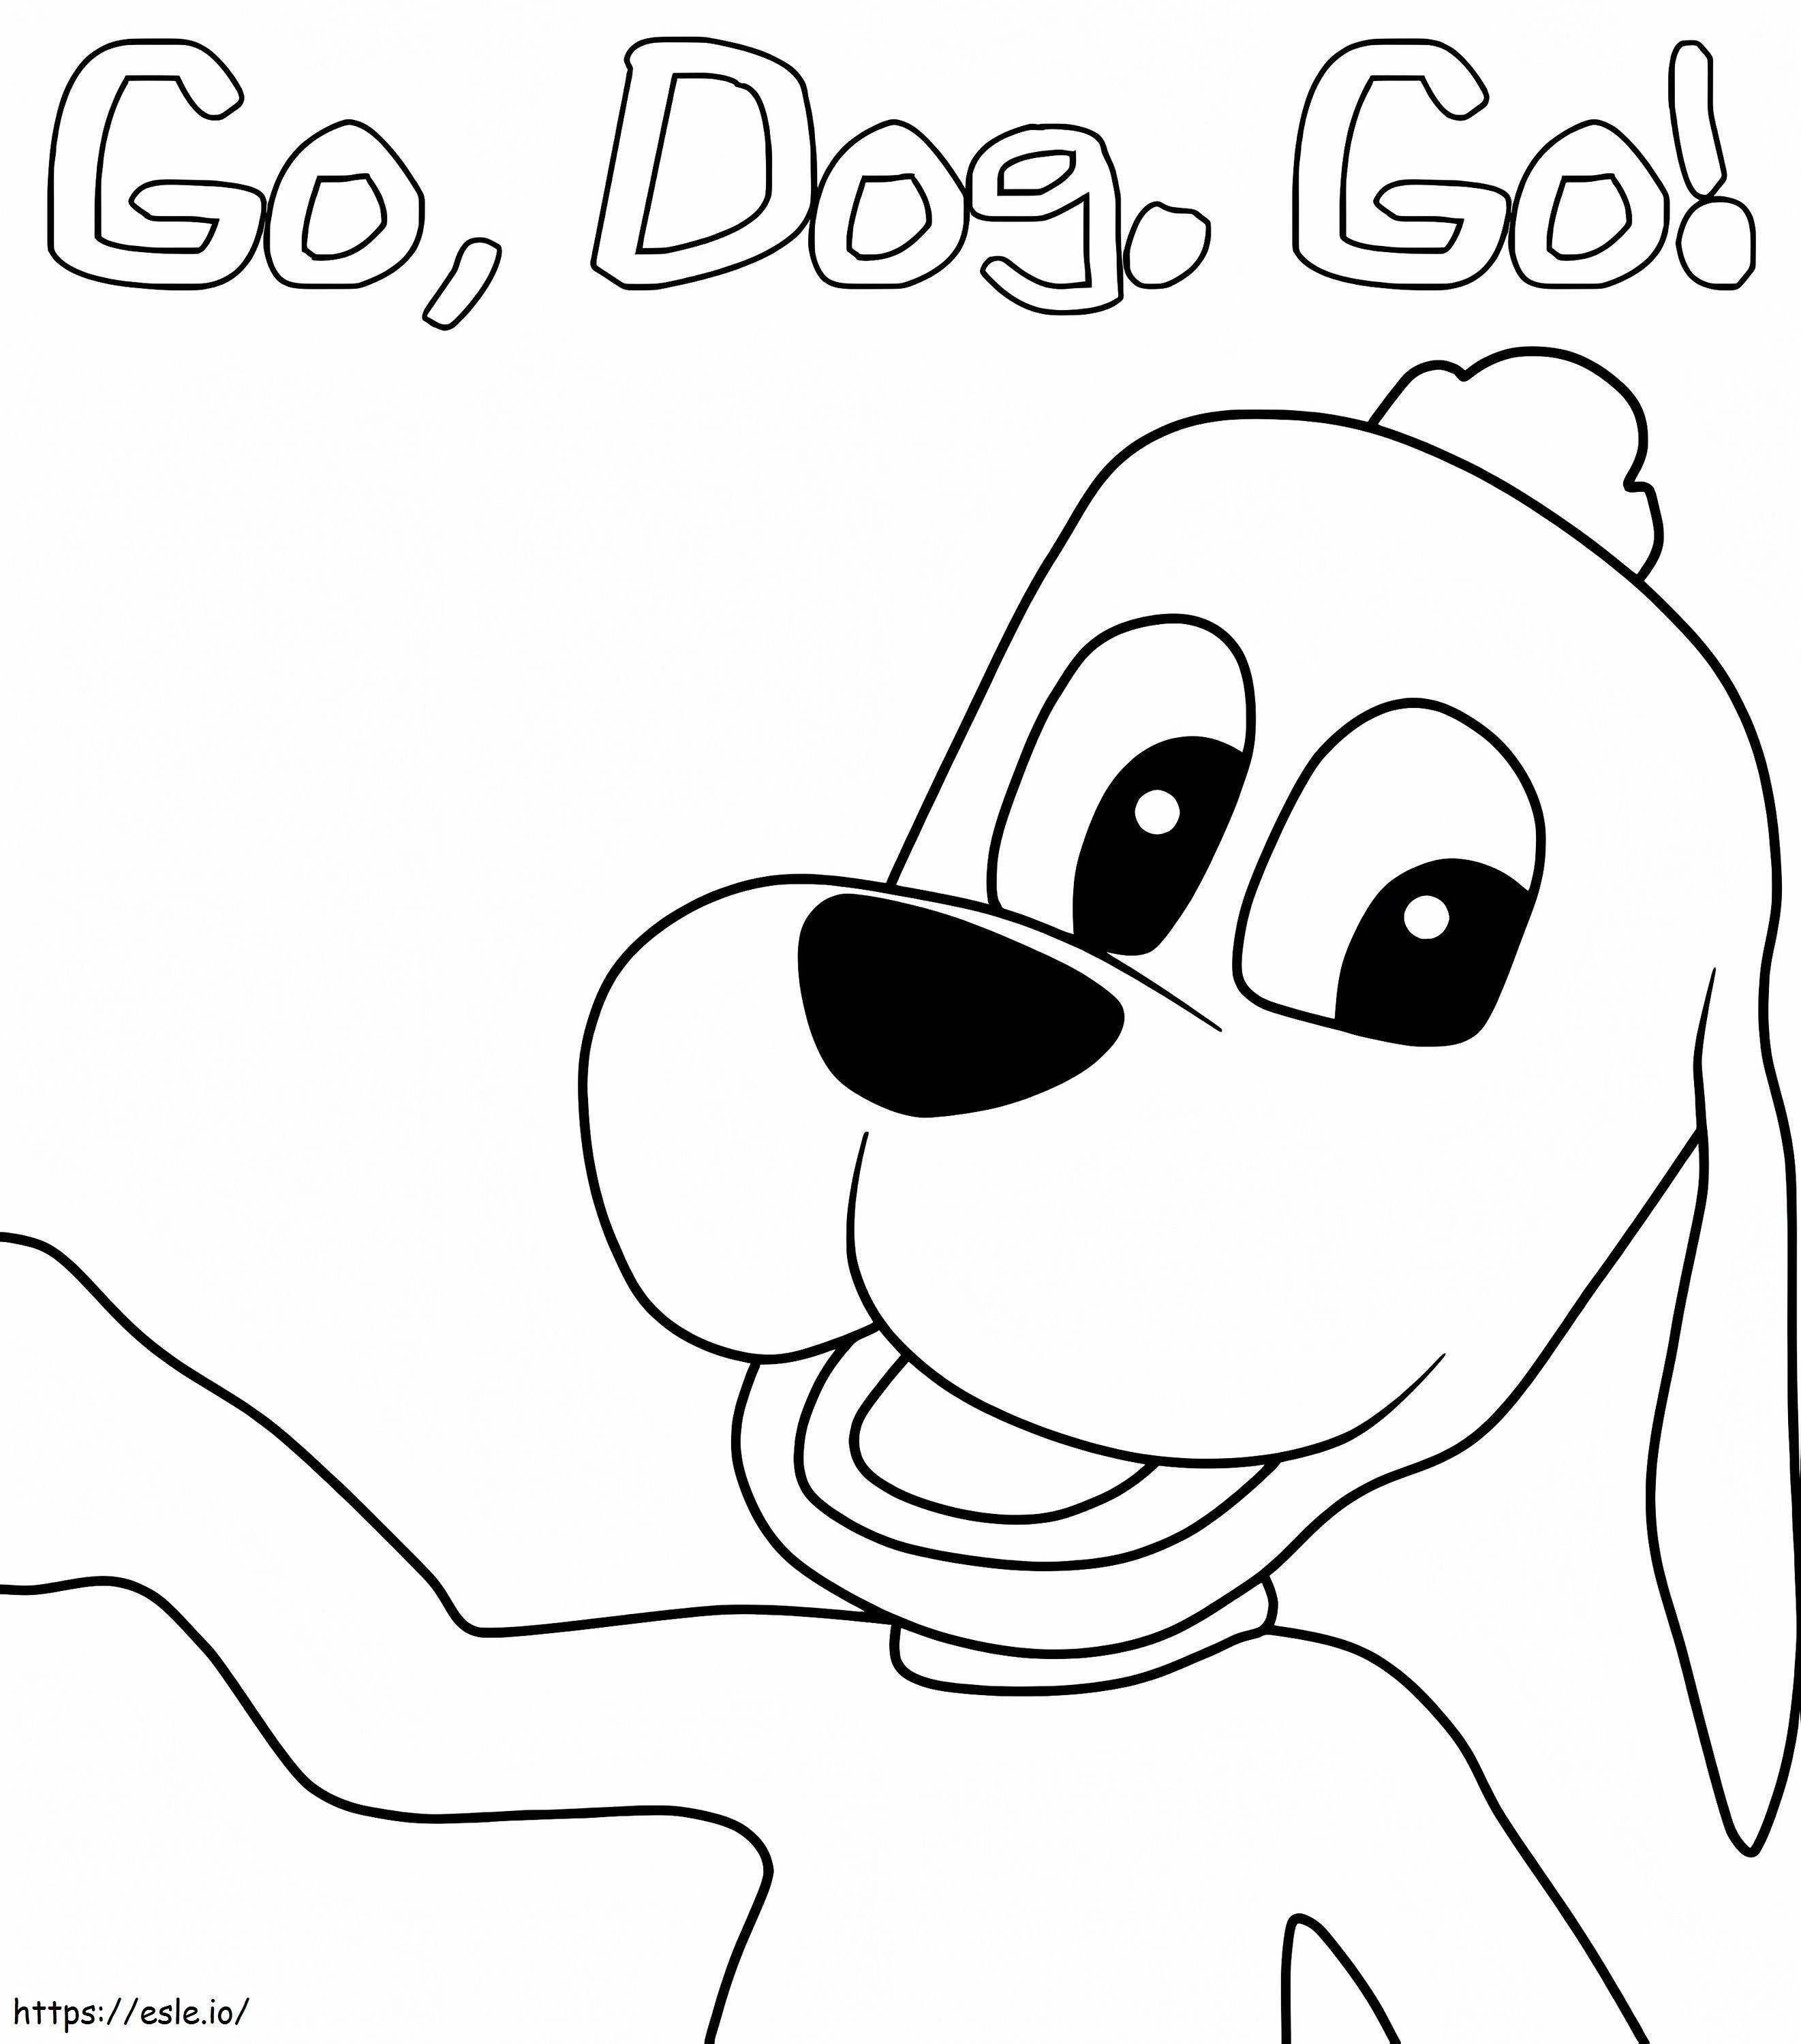 Markieren Sie Barker von Go Dog Go ausmalbilder